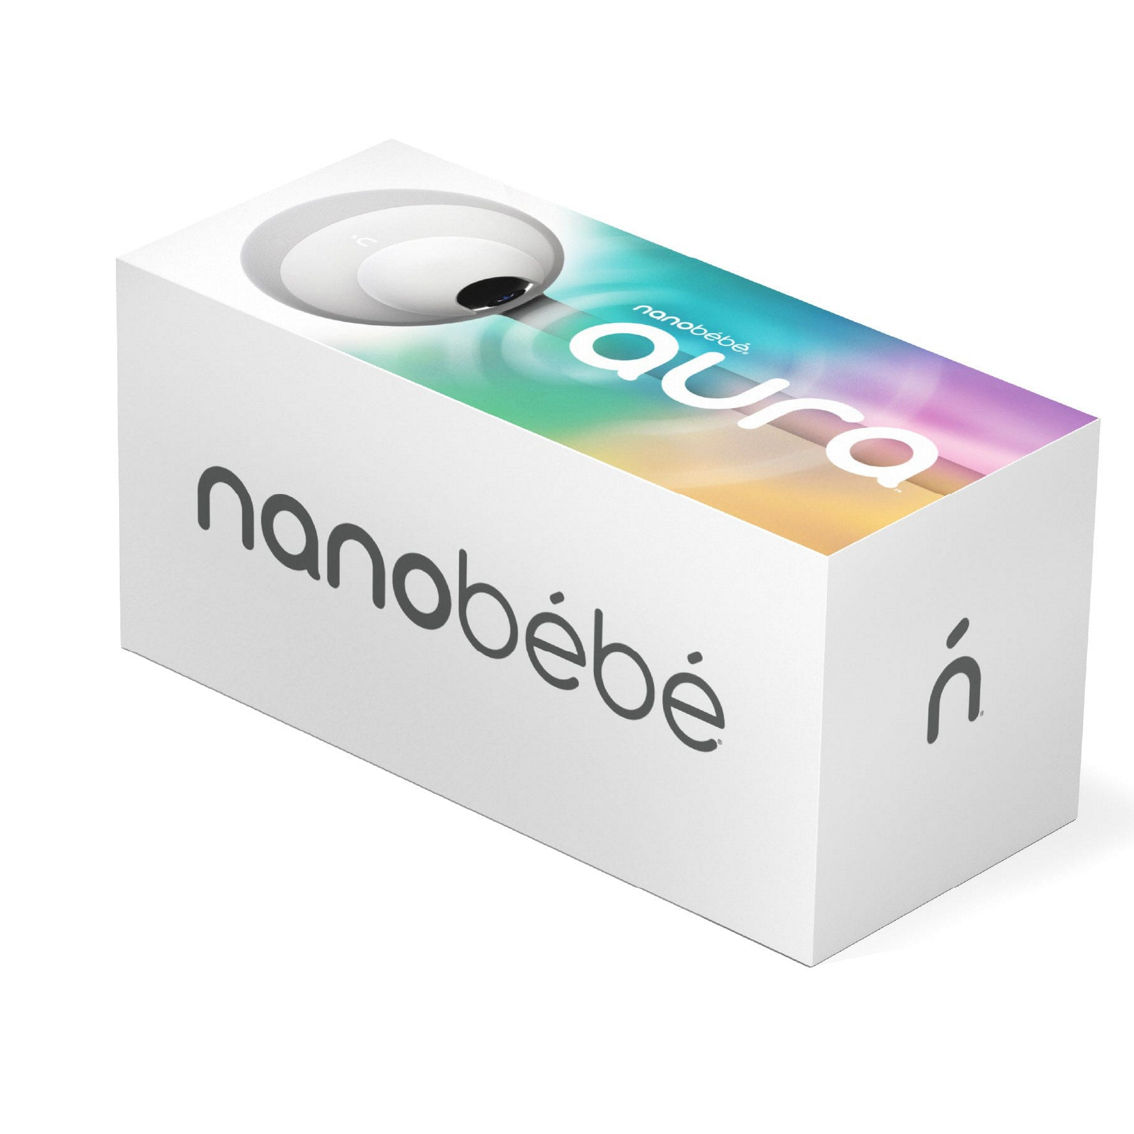 Nanobebe Aura Smart Baby Monitor - Image 2 of 5